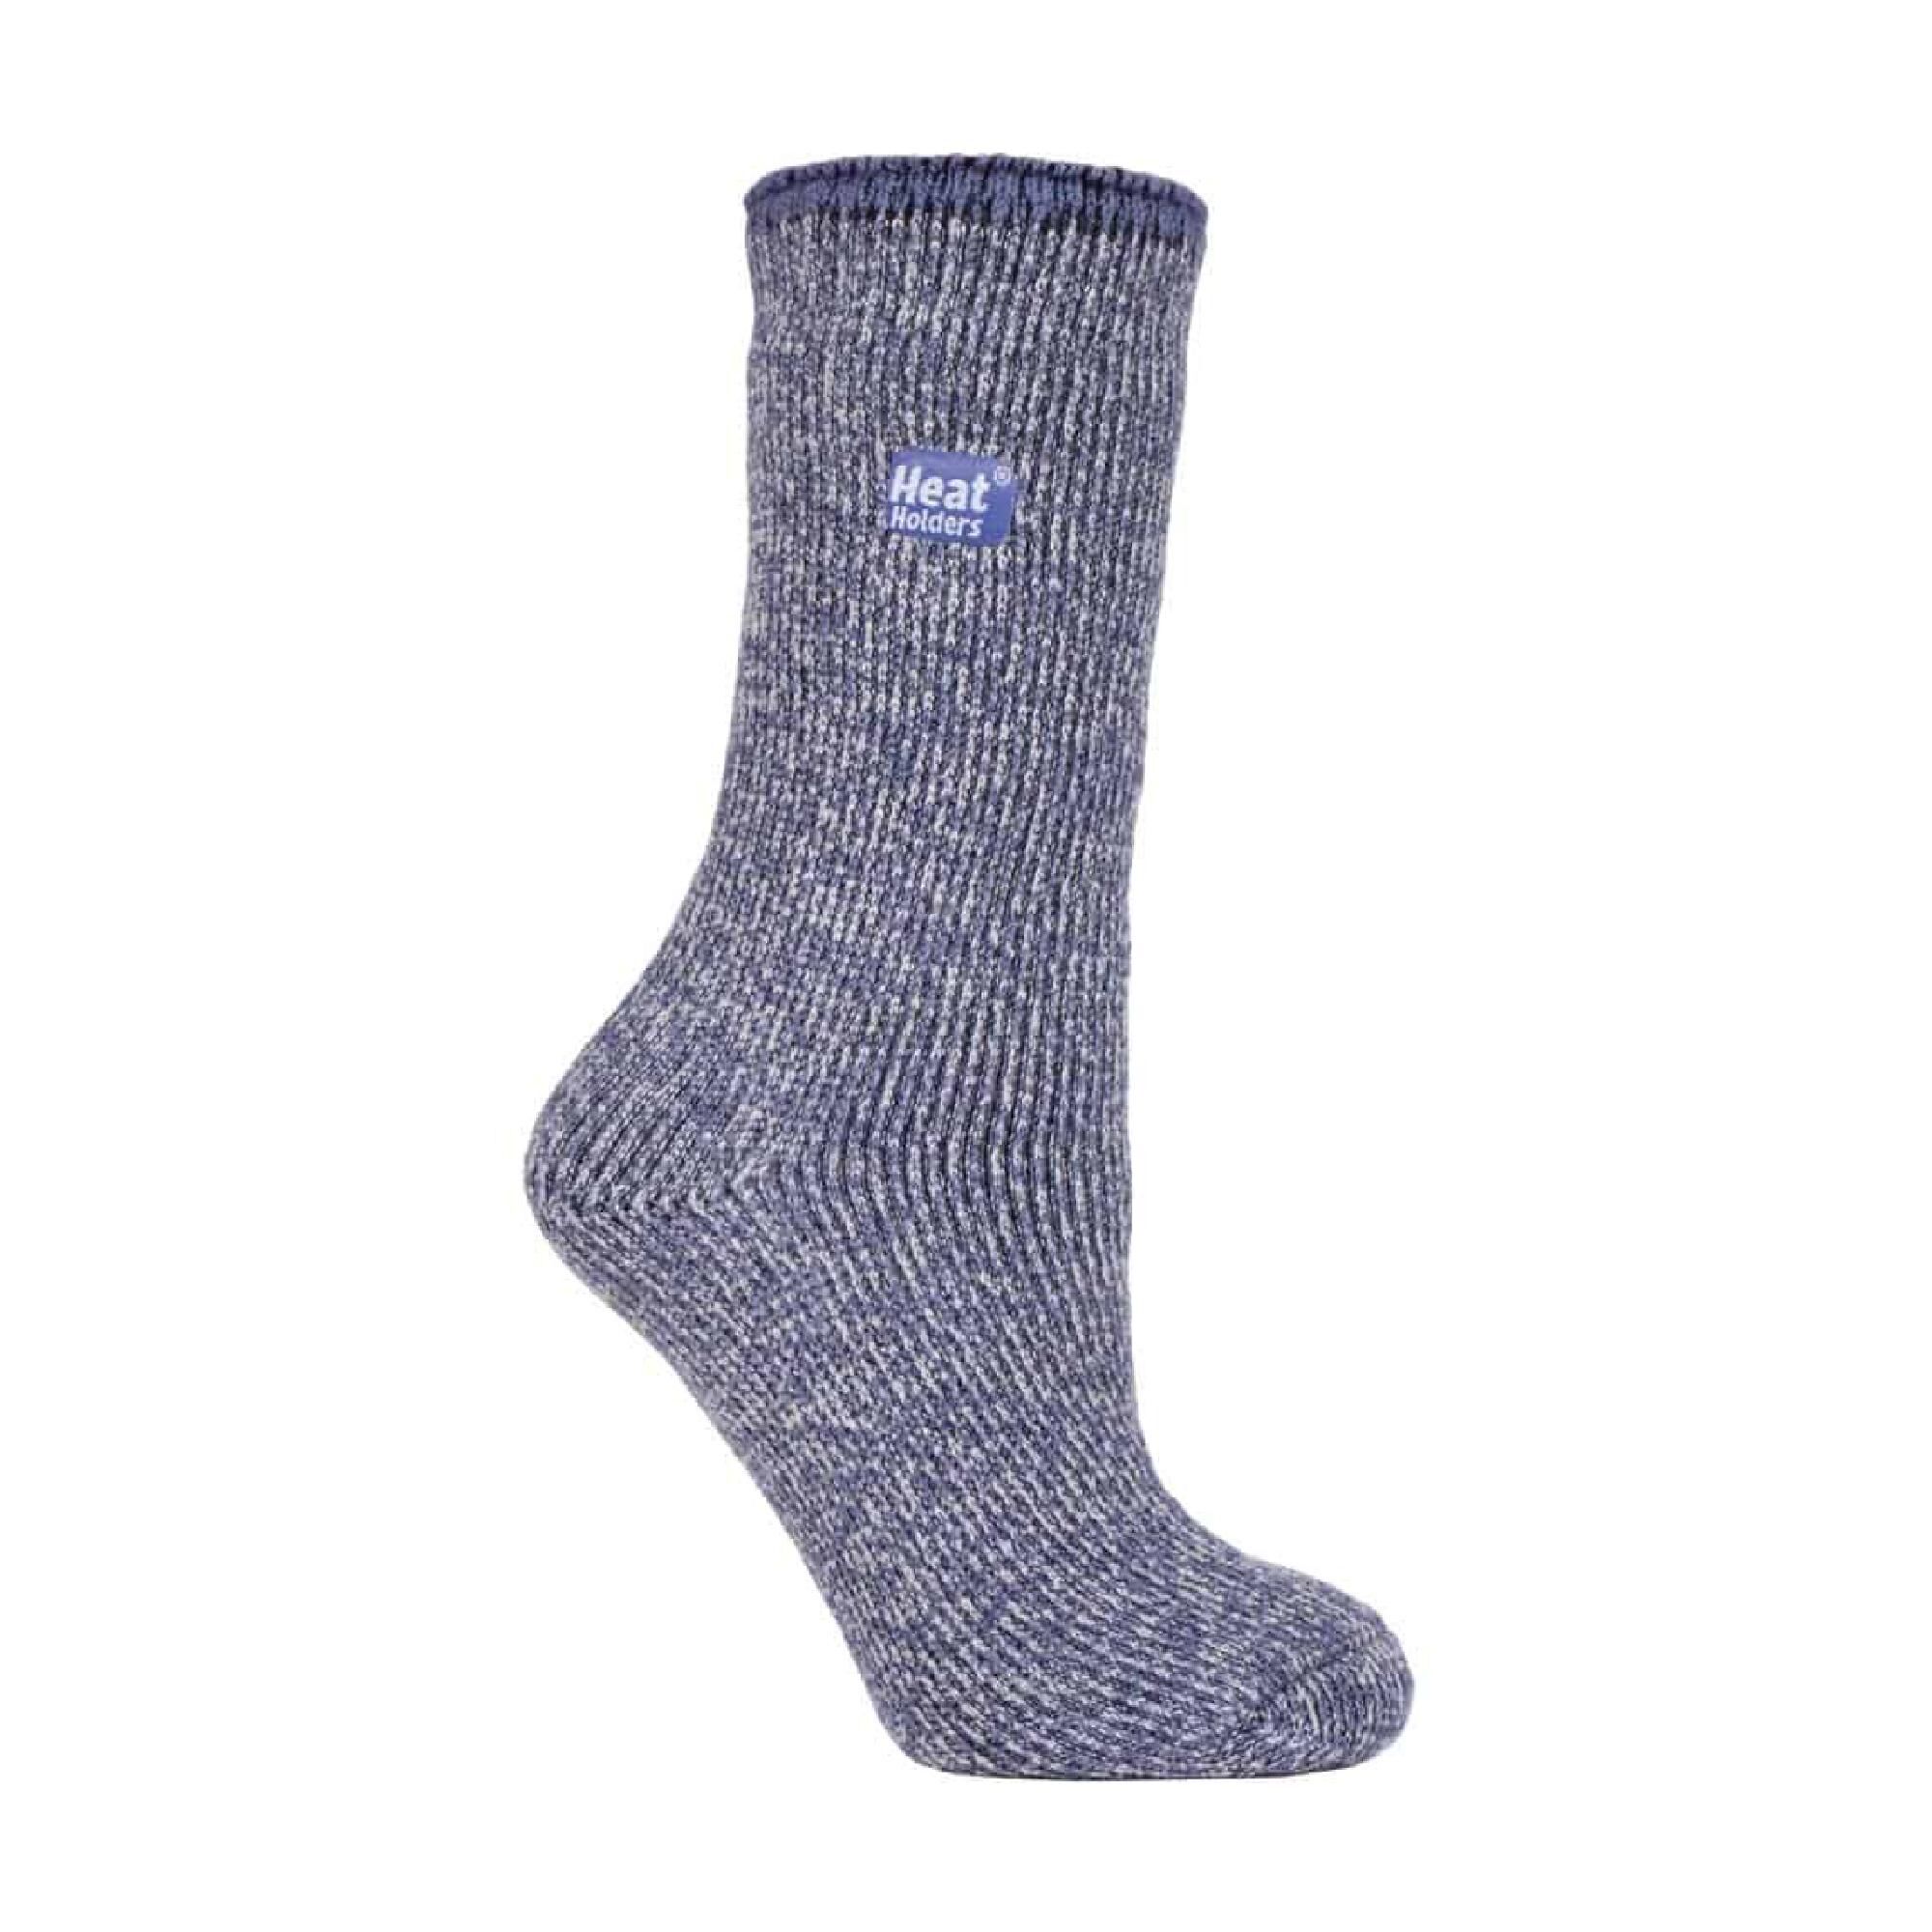 HEAT HOLDERS Ladies Thick Reinforced 2.9 TOG Winter Warm Merino Wool Thermal Socks